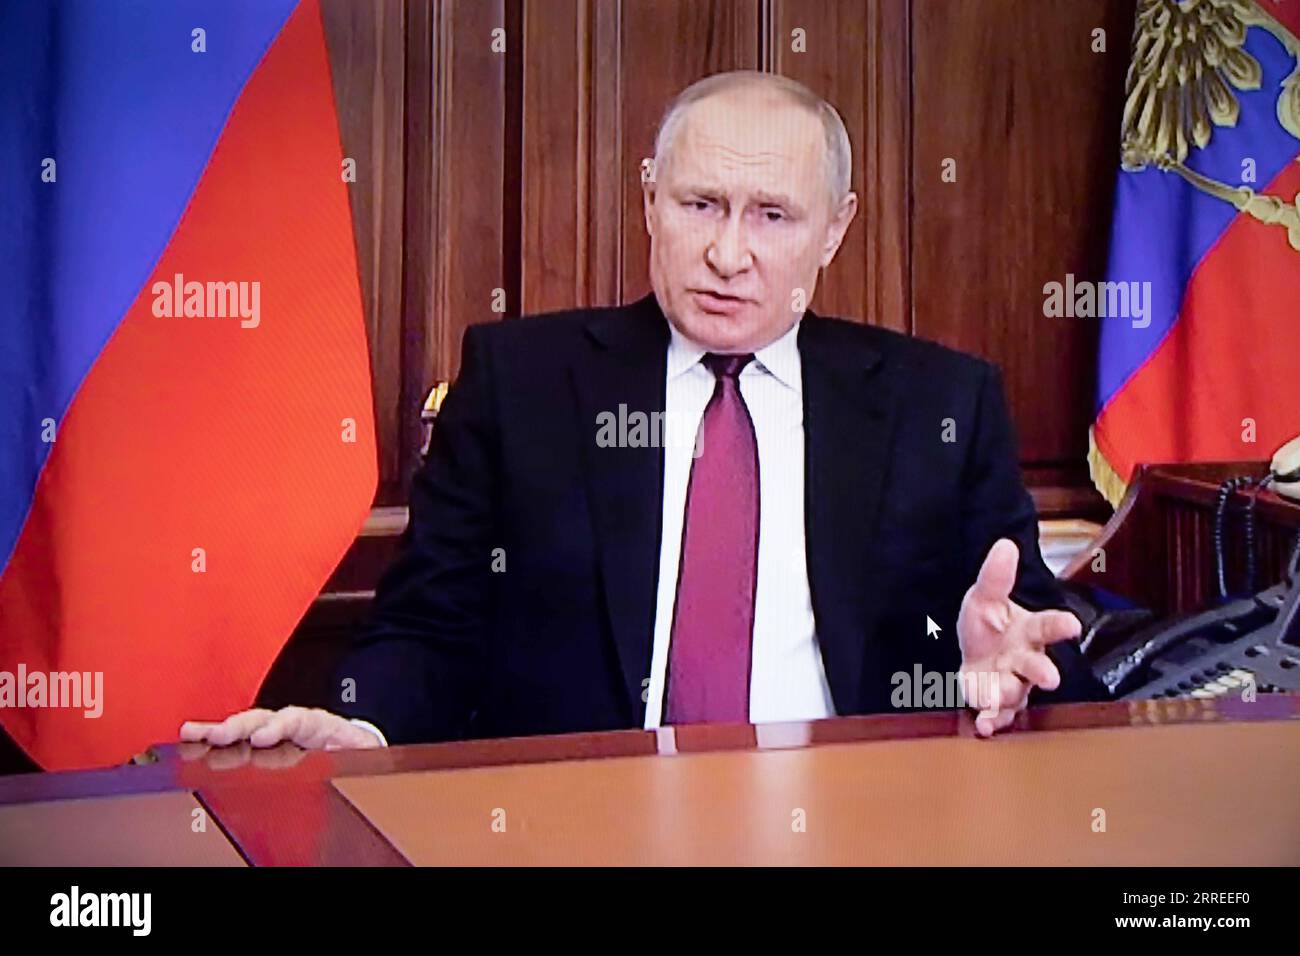 220224 -- MOSKAU, 24. Februar 2022 -- das Foto vom 24. Februar 2022 zeigt einen Bildschirm, auf dem der russische Präsident Wladimir Putin während einer Fernsehansprache in Moskau, Russland, spricht. Putin hat am Donnerstag eine besondere Militäroperation als Reaktion auf den Appell der Führer der Republiken in der Donbass-Region genehmigt. RUSSLAND-MOSKAU-PUTIN-FERNSEHADRESSE BaixXueqi PUBLICATIONxNOTxINxCHN Stockfoto